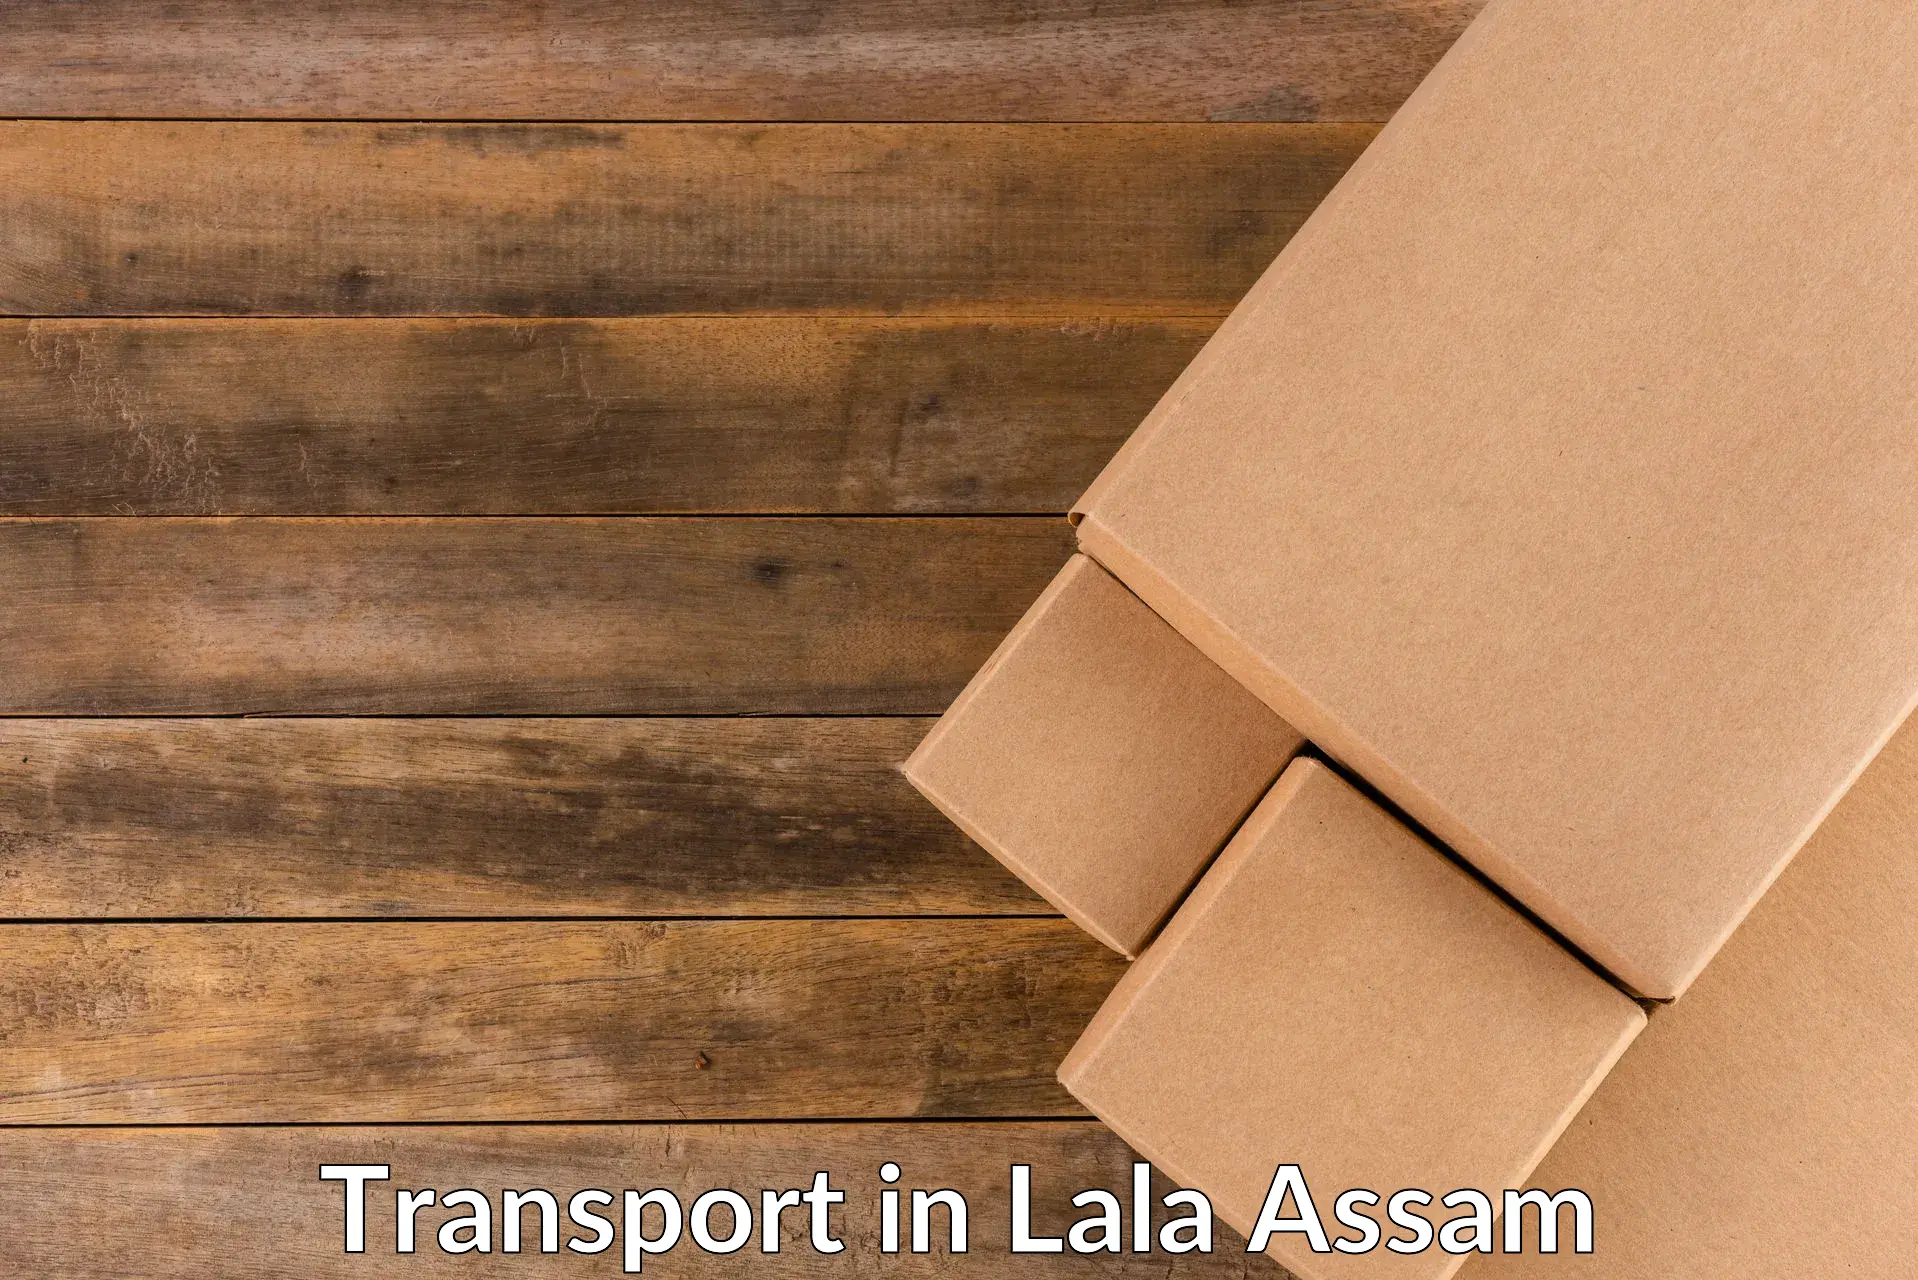 Bike shipping service in Lala Assam